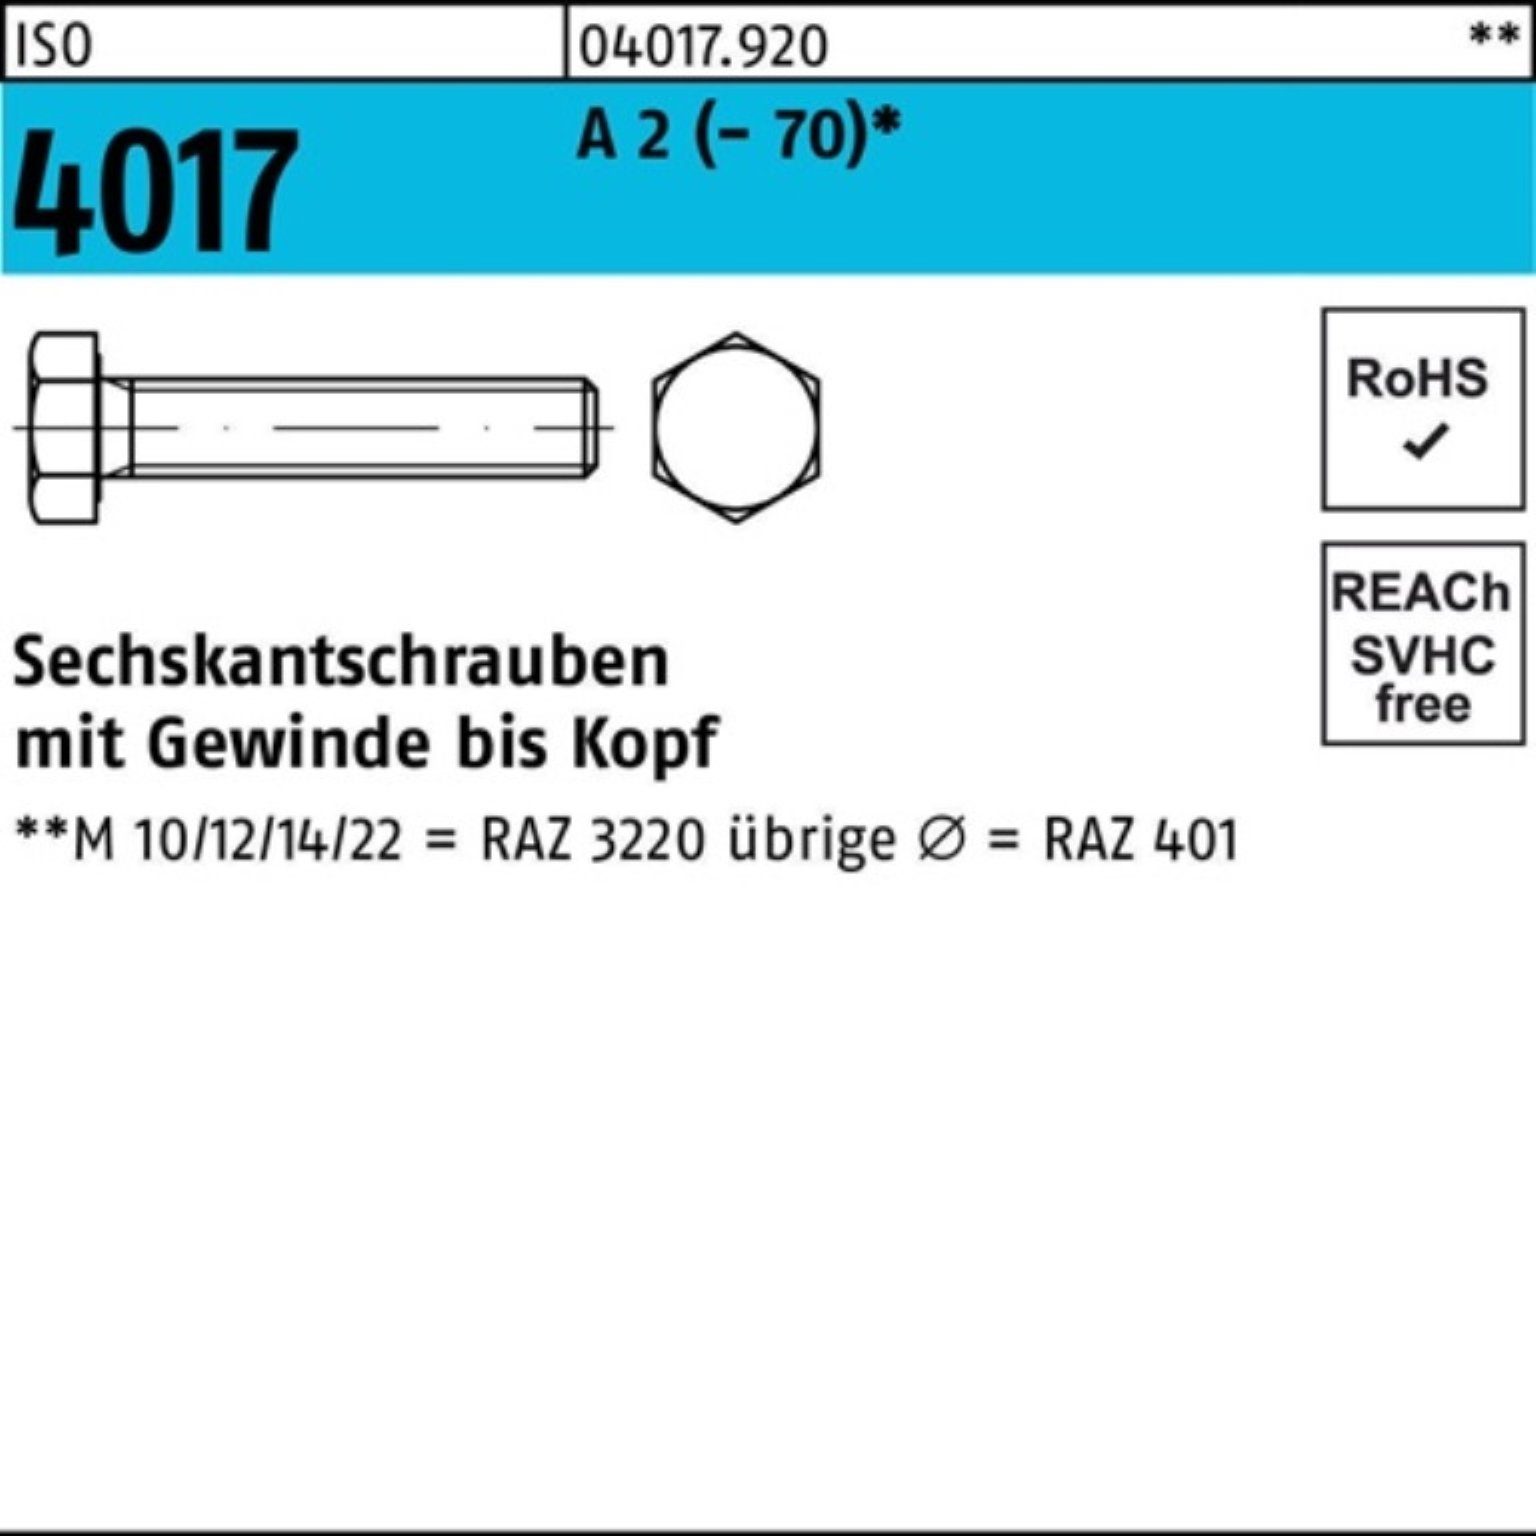 Bufab Sechskantschraube 100er Pack Sechskantschraube ISO 4017 VG M12x 22 A 2 (70) 100 Stück